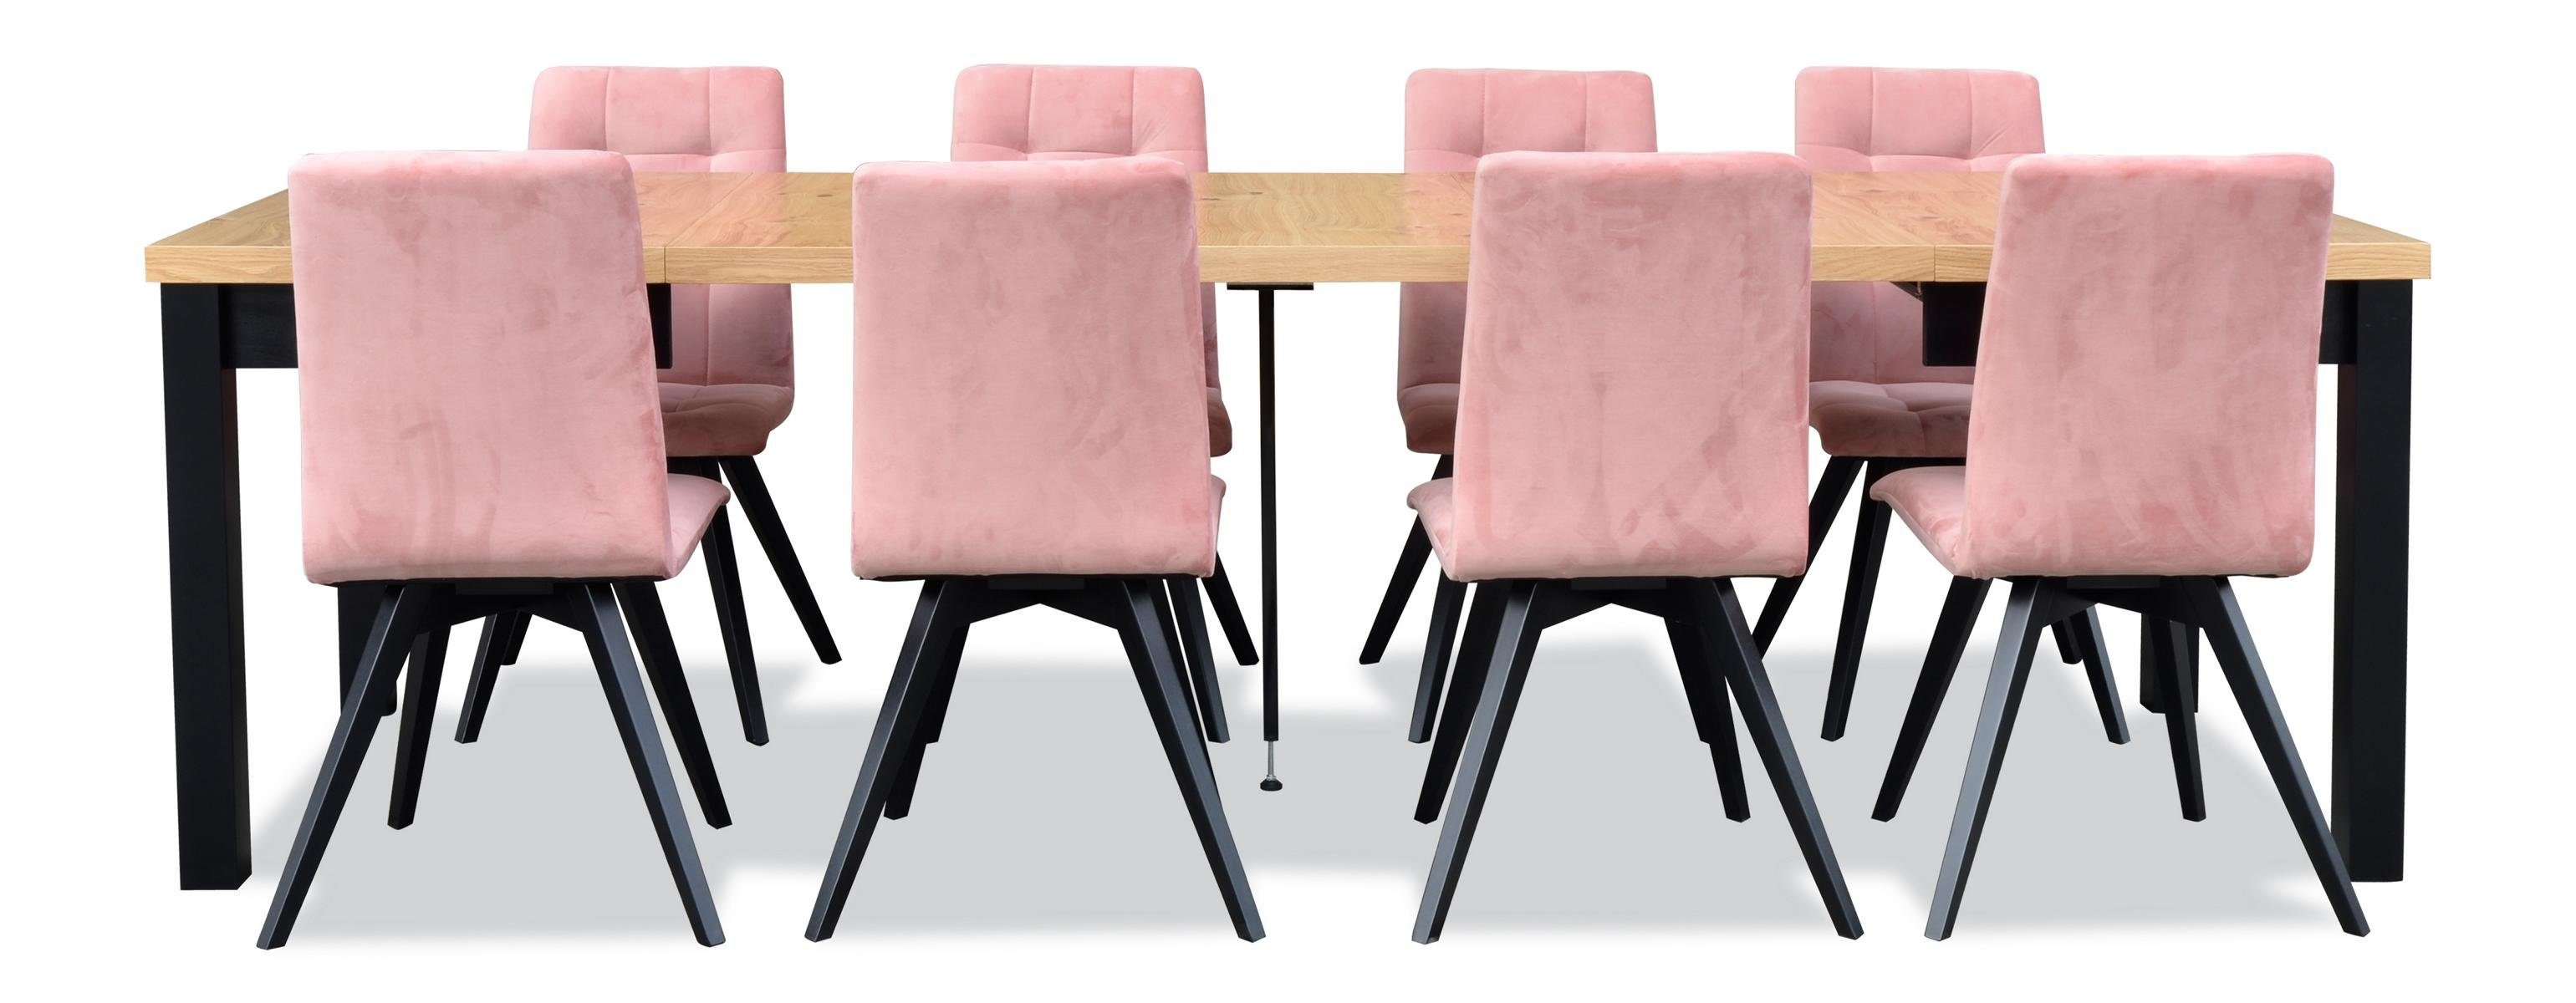 JVmoebel Essgruppe, Modern Esszimmer Möbel Esstisch + 6 Stühle Komplett  Garnitur 7tlg. Set Gruppe online kaufen | OTTO